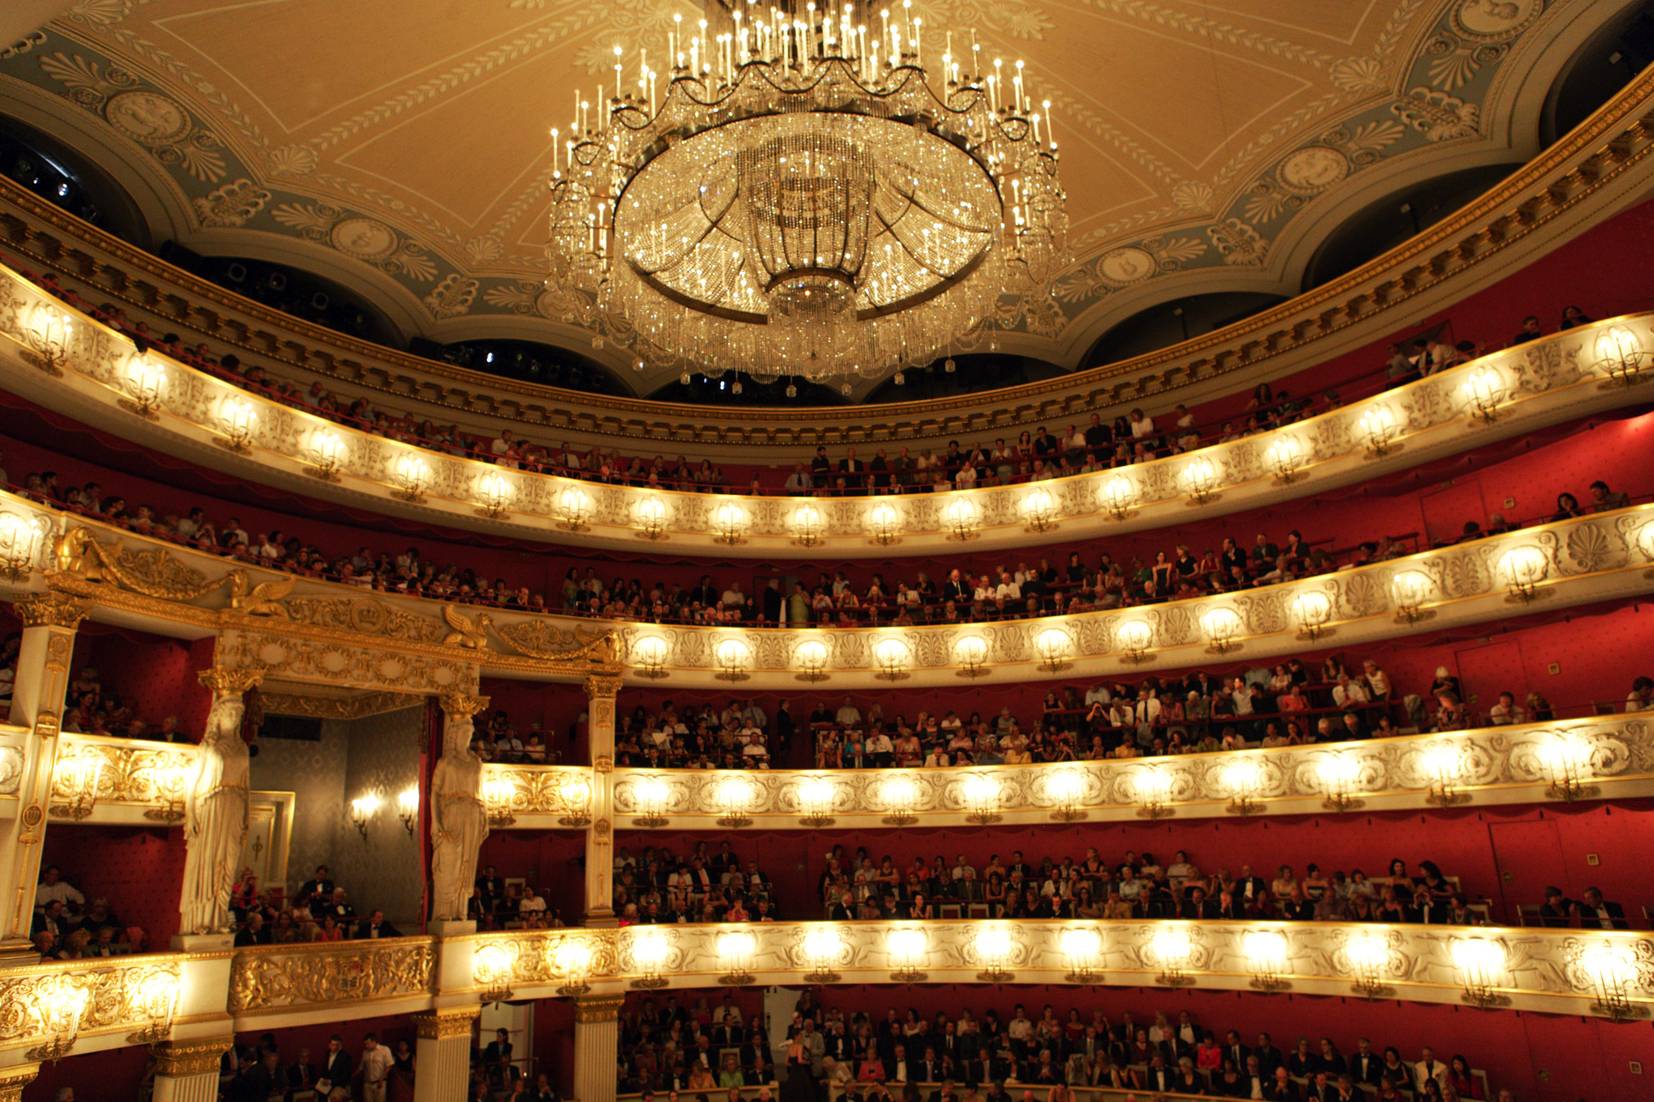 Йонас кауфман в опере рихарда вагнера «парсифаль» на мюнхенском оперном фестивале, баварская государственная опера, июнь-июль 2018 - бинокль